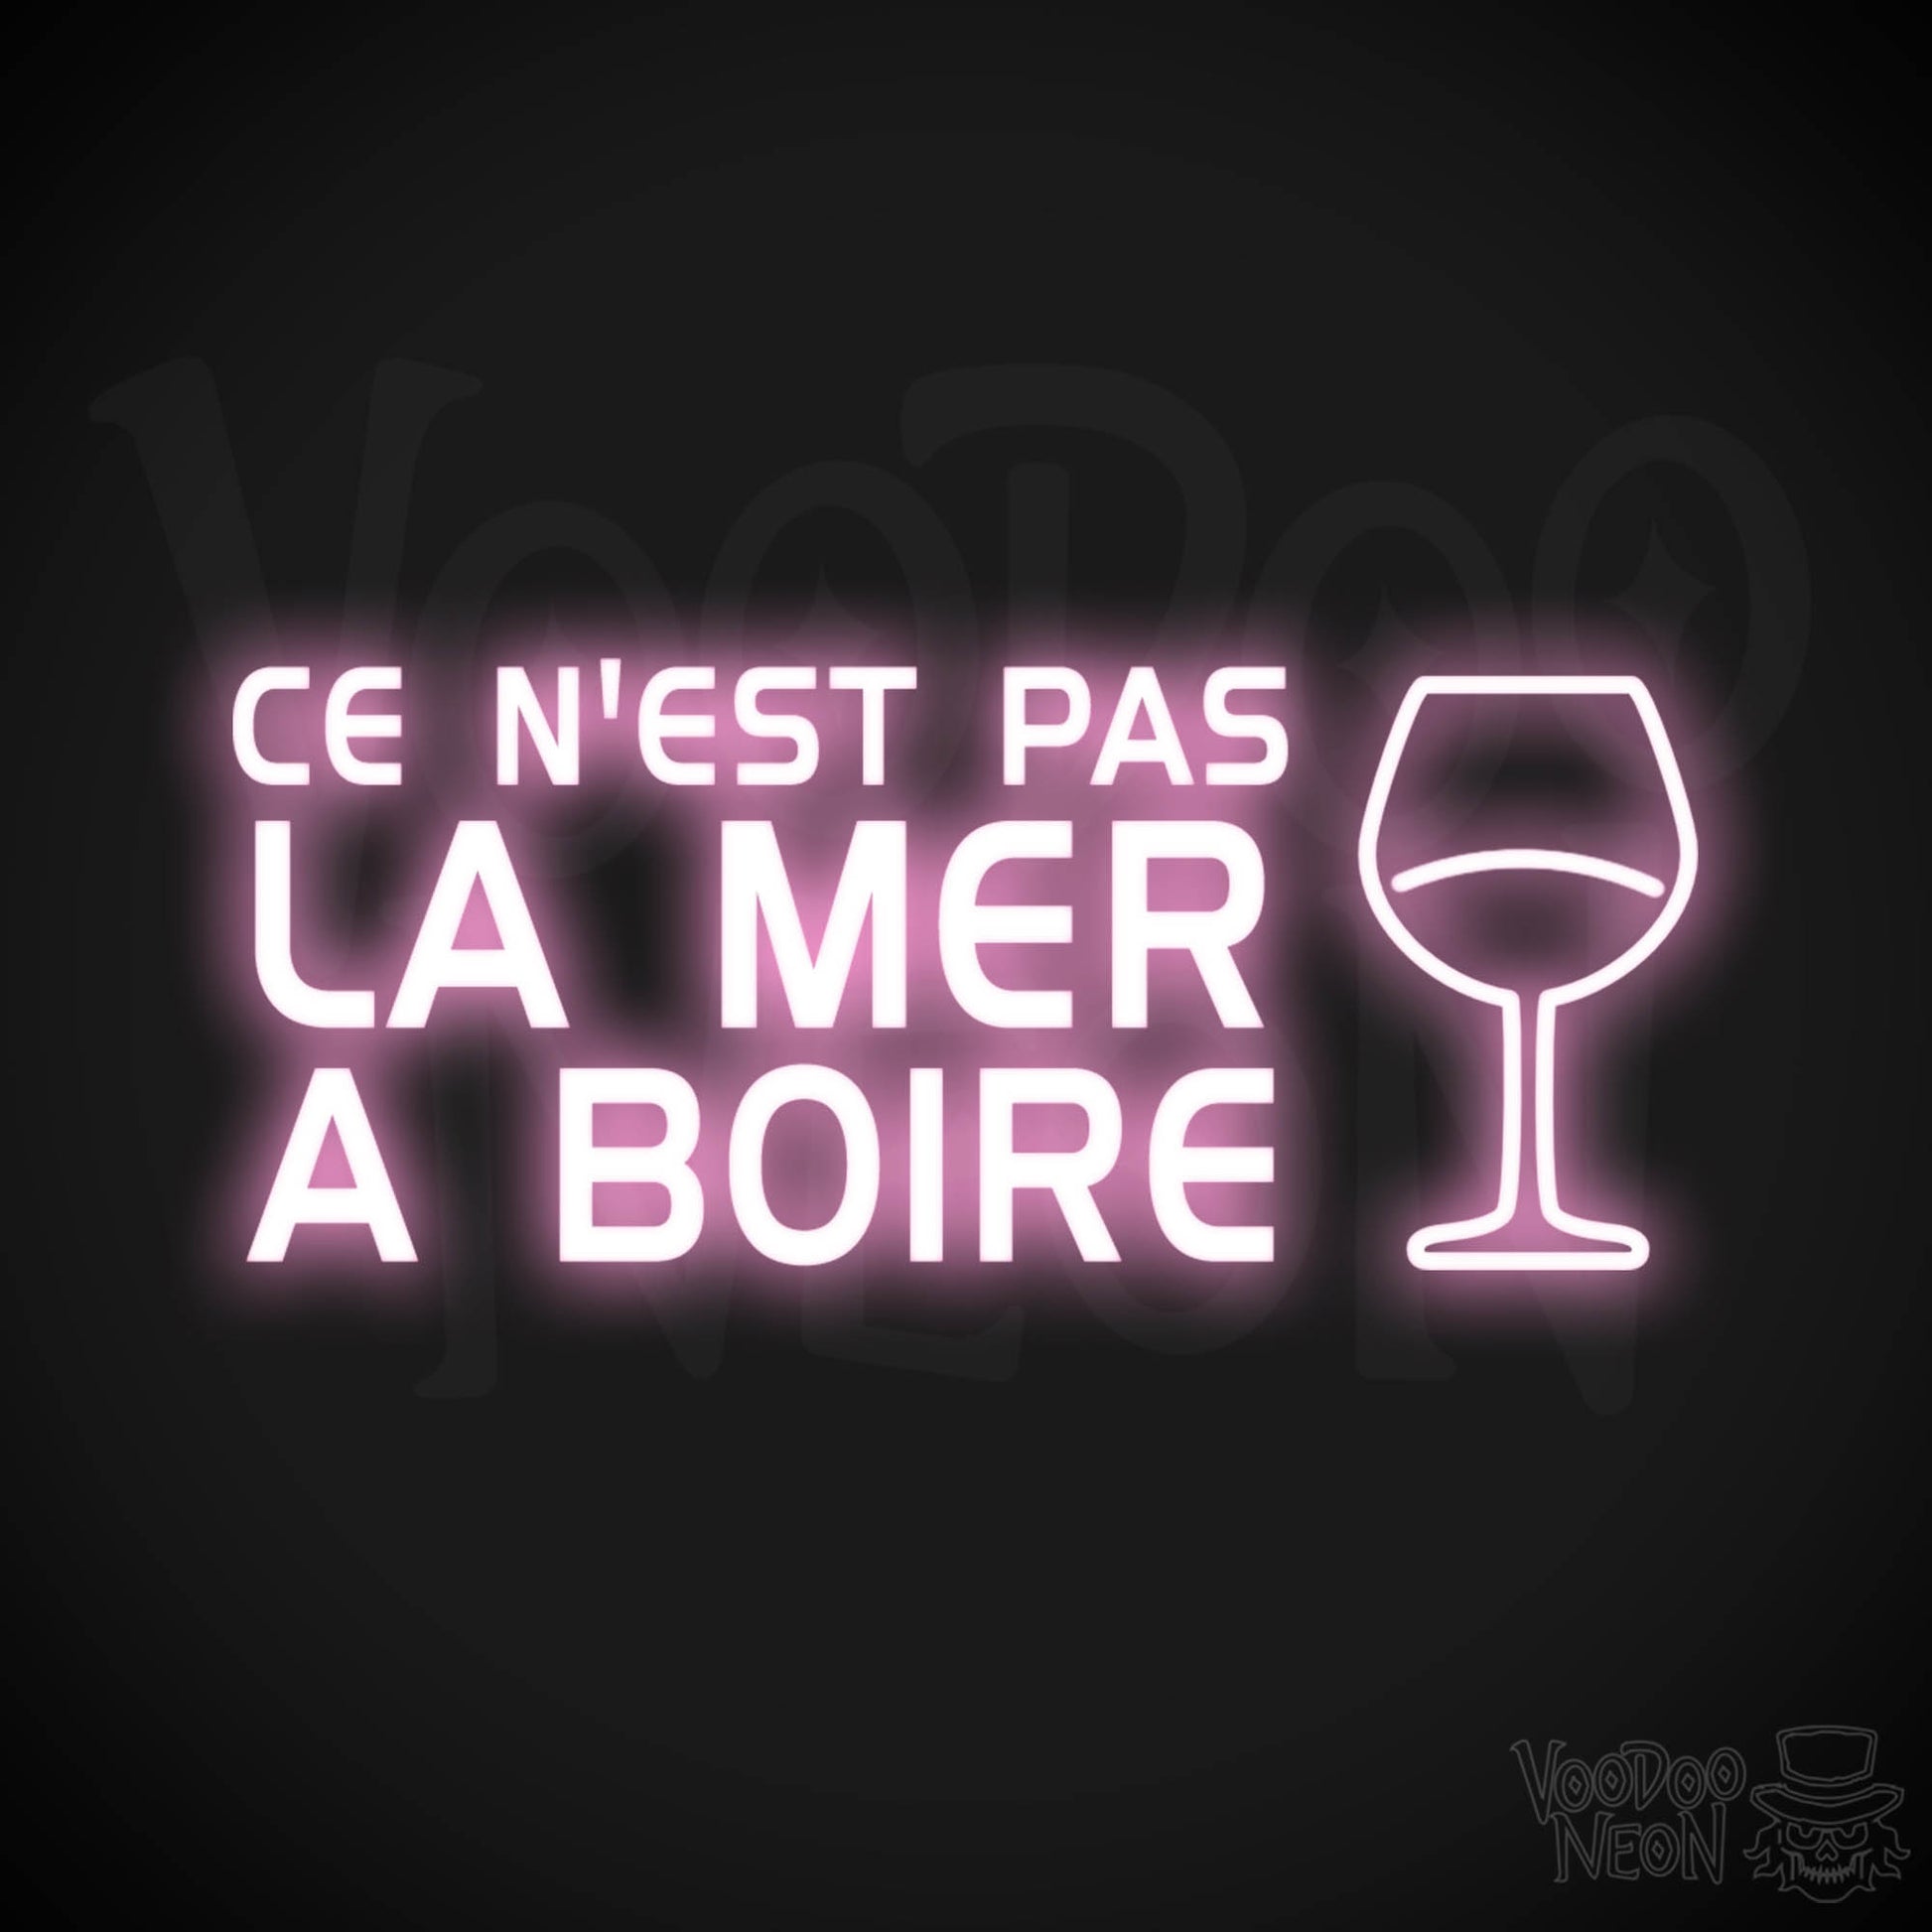 Ce N'est Pas La Mer a Boire Neon Sign - LED Lights - Color Light Pink